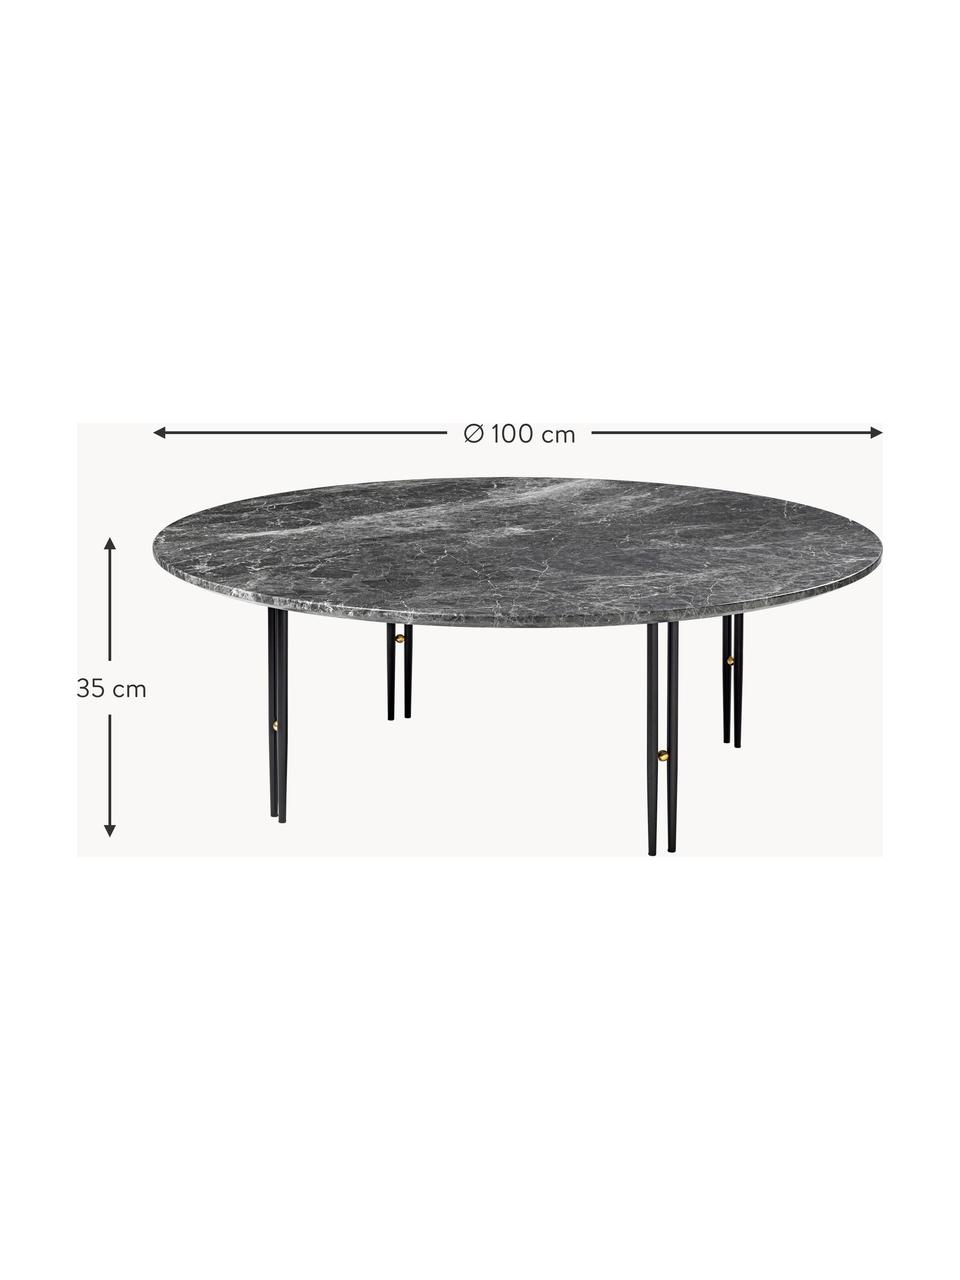 Runder Marmor-Couchtisch IOI, Ø 100 cm, Tischplatte: Marmor, Gestell: Stahl, lackiert, Dekor: Messing, Dunkelgrau marmoriert, Schwarz, Ø 100 cm